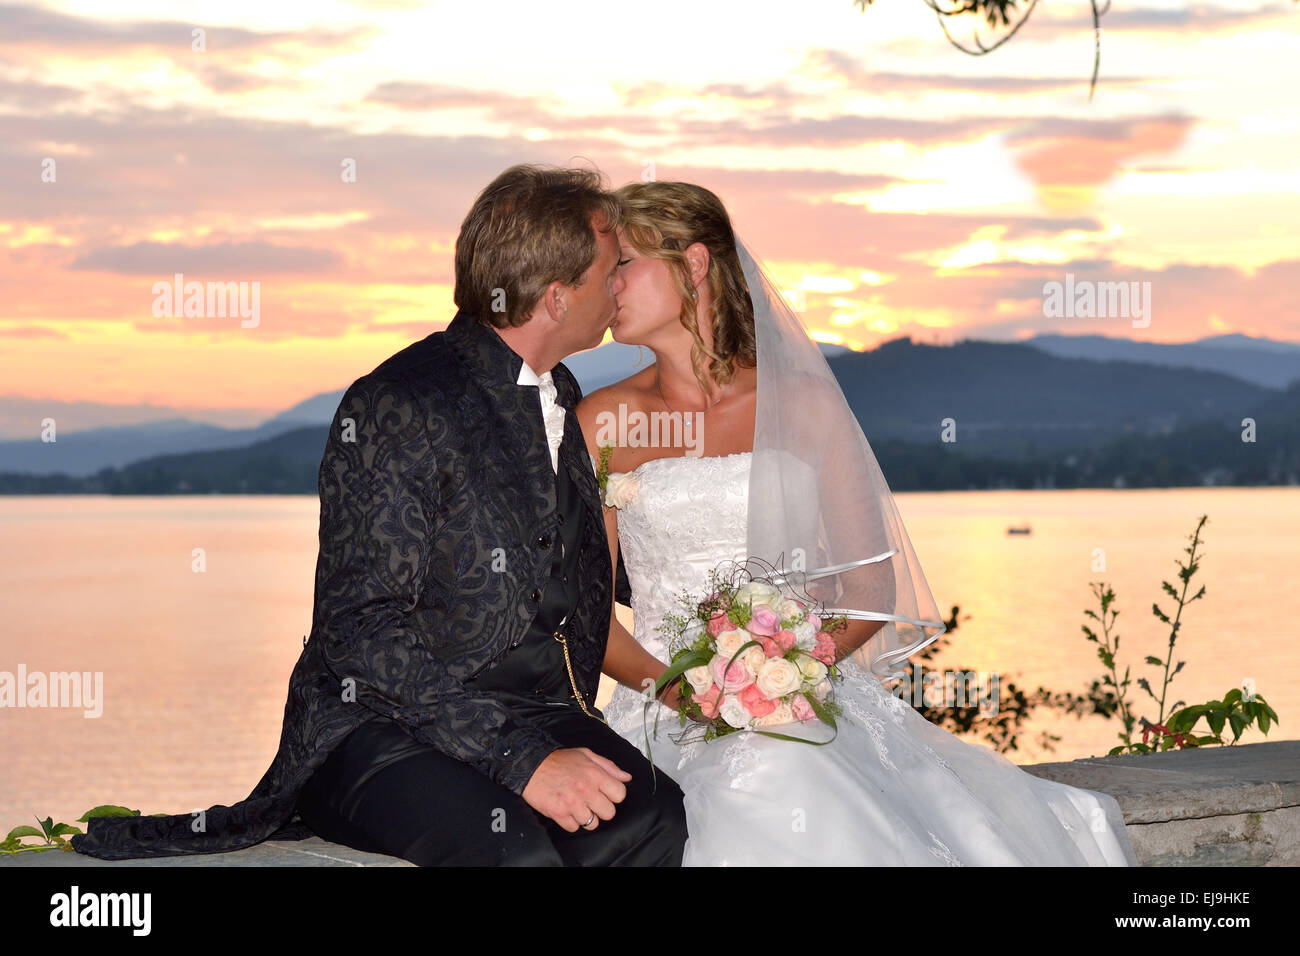 Wedding couple kissing at sunset Stock Photo